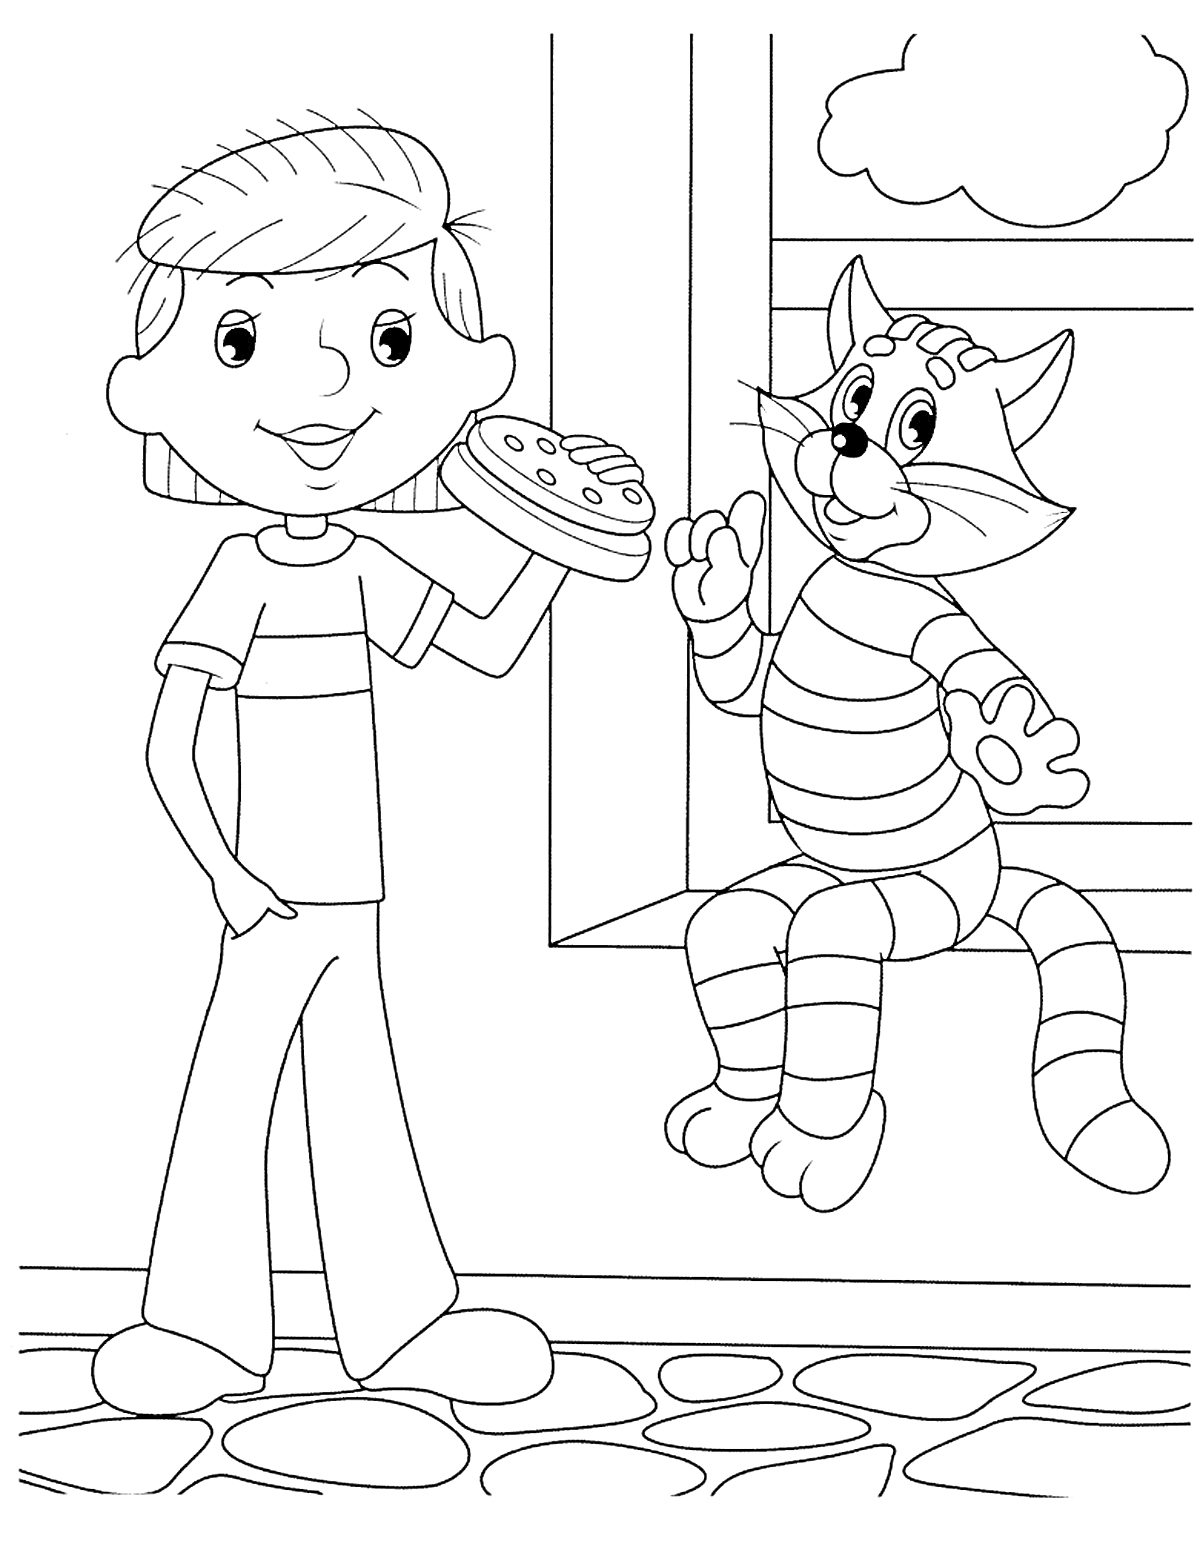 Мальчик с пиццей держит руку с пирогом, рядом с ним сидящий на подоконнике полосатый кот под окном